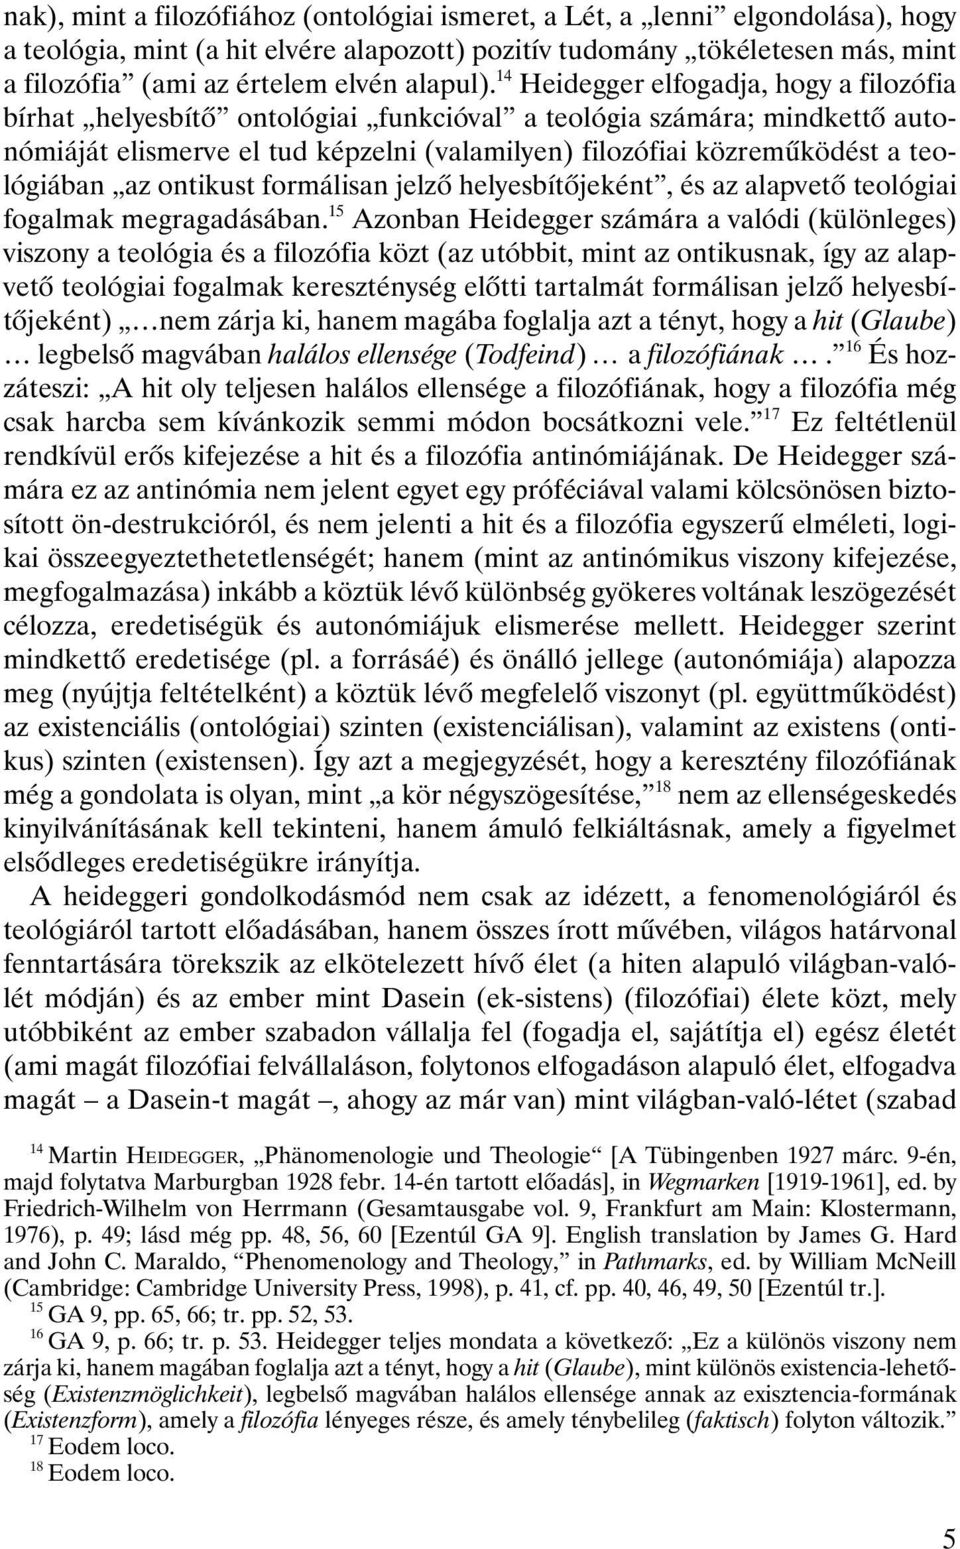 14 Heidegger elfogadja, hogy a filozófia bírhat helyesbítô ontológiai funkcióval a teológia számára; mindkettô autonómiáját elismerve el tud képzelni (valamilyen) filozófiai közremûködést a